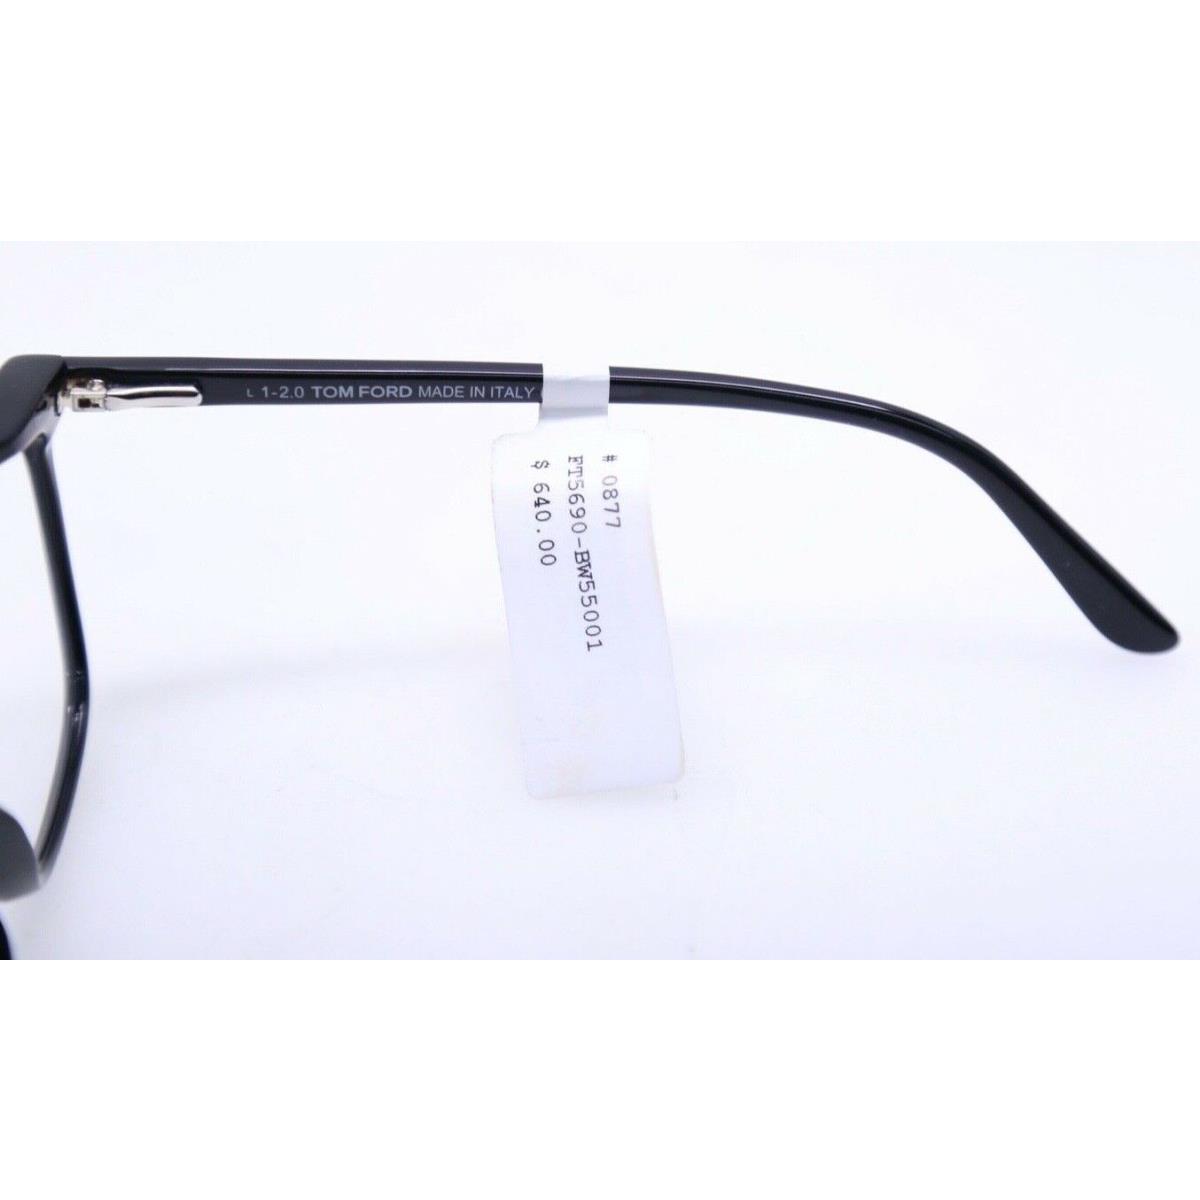 Tom Ford eyeglasses  - Shiny Black Frame 1